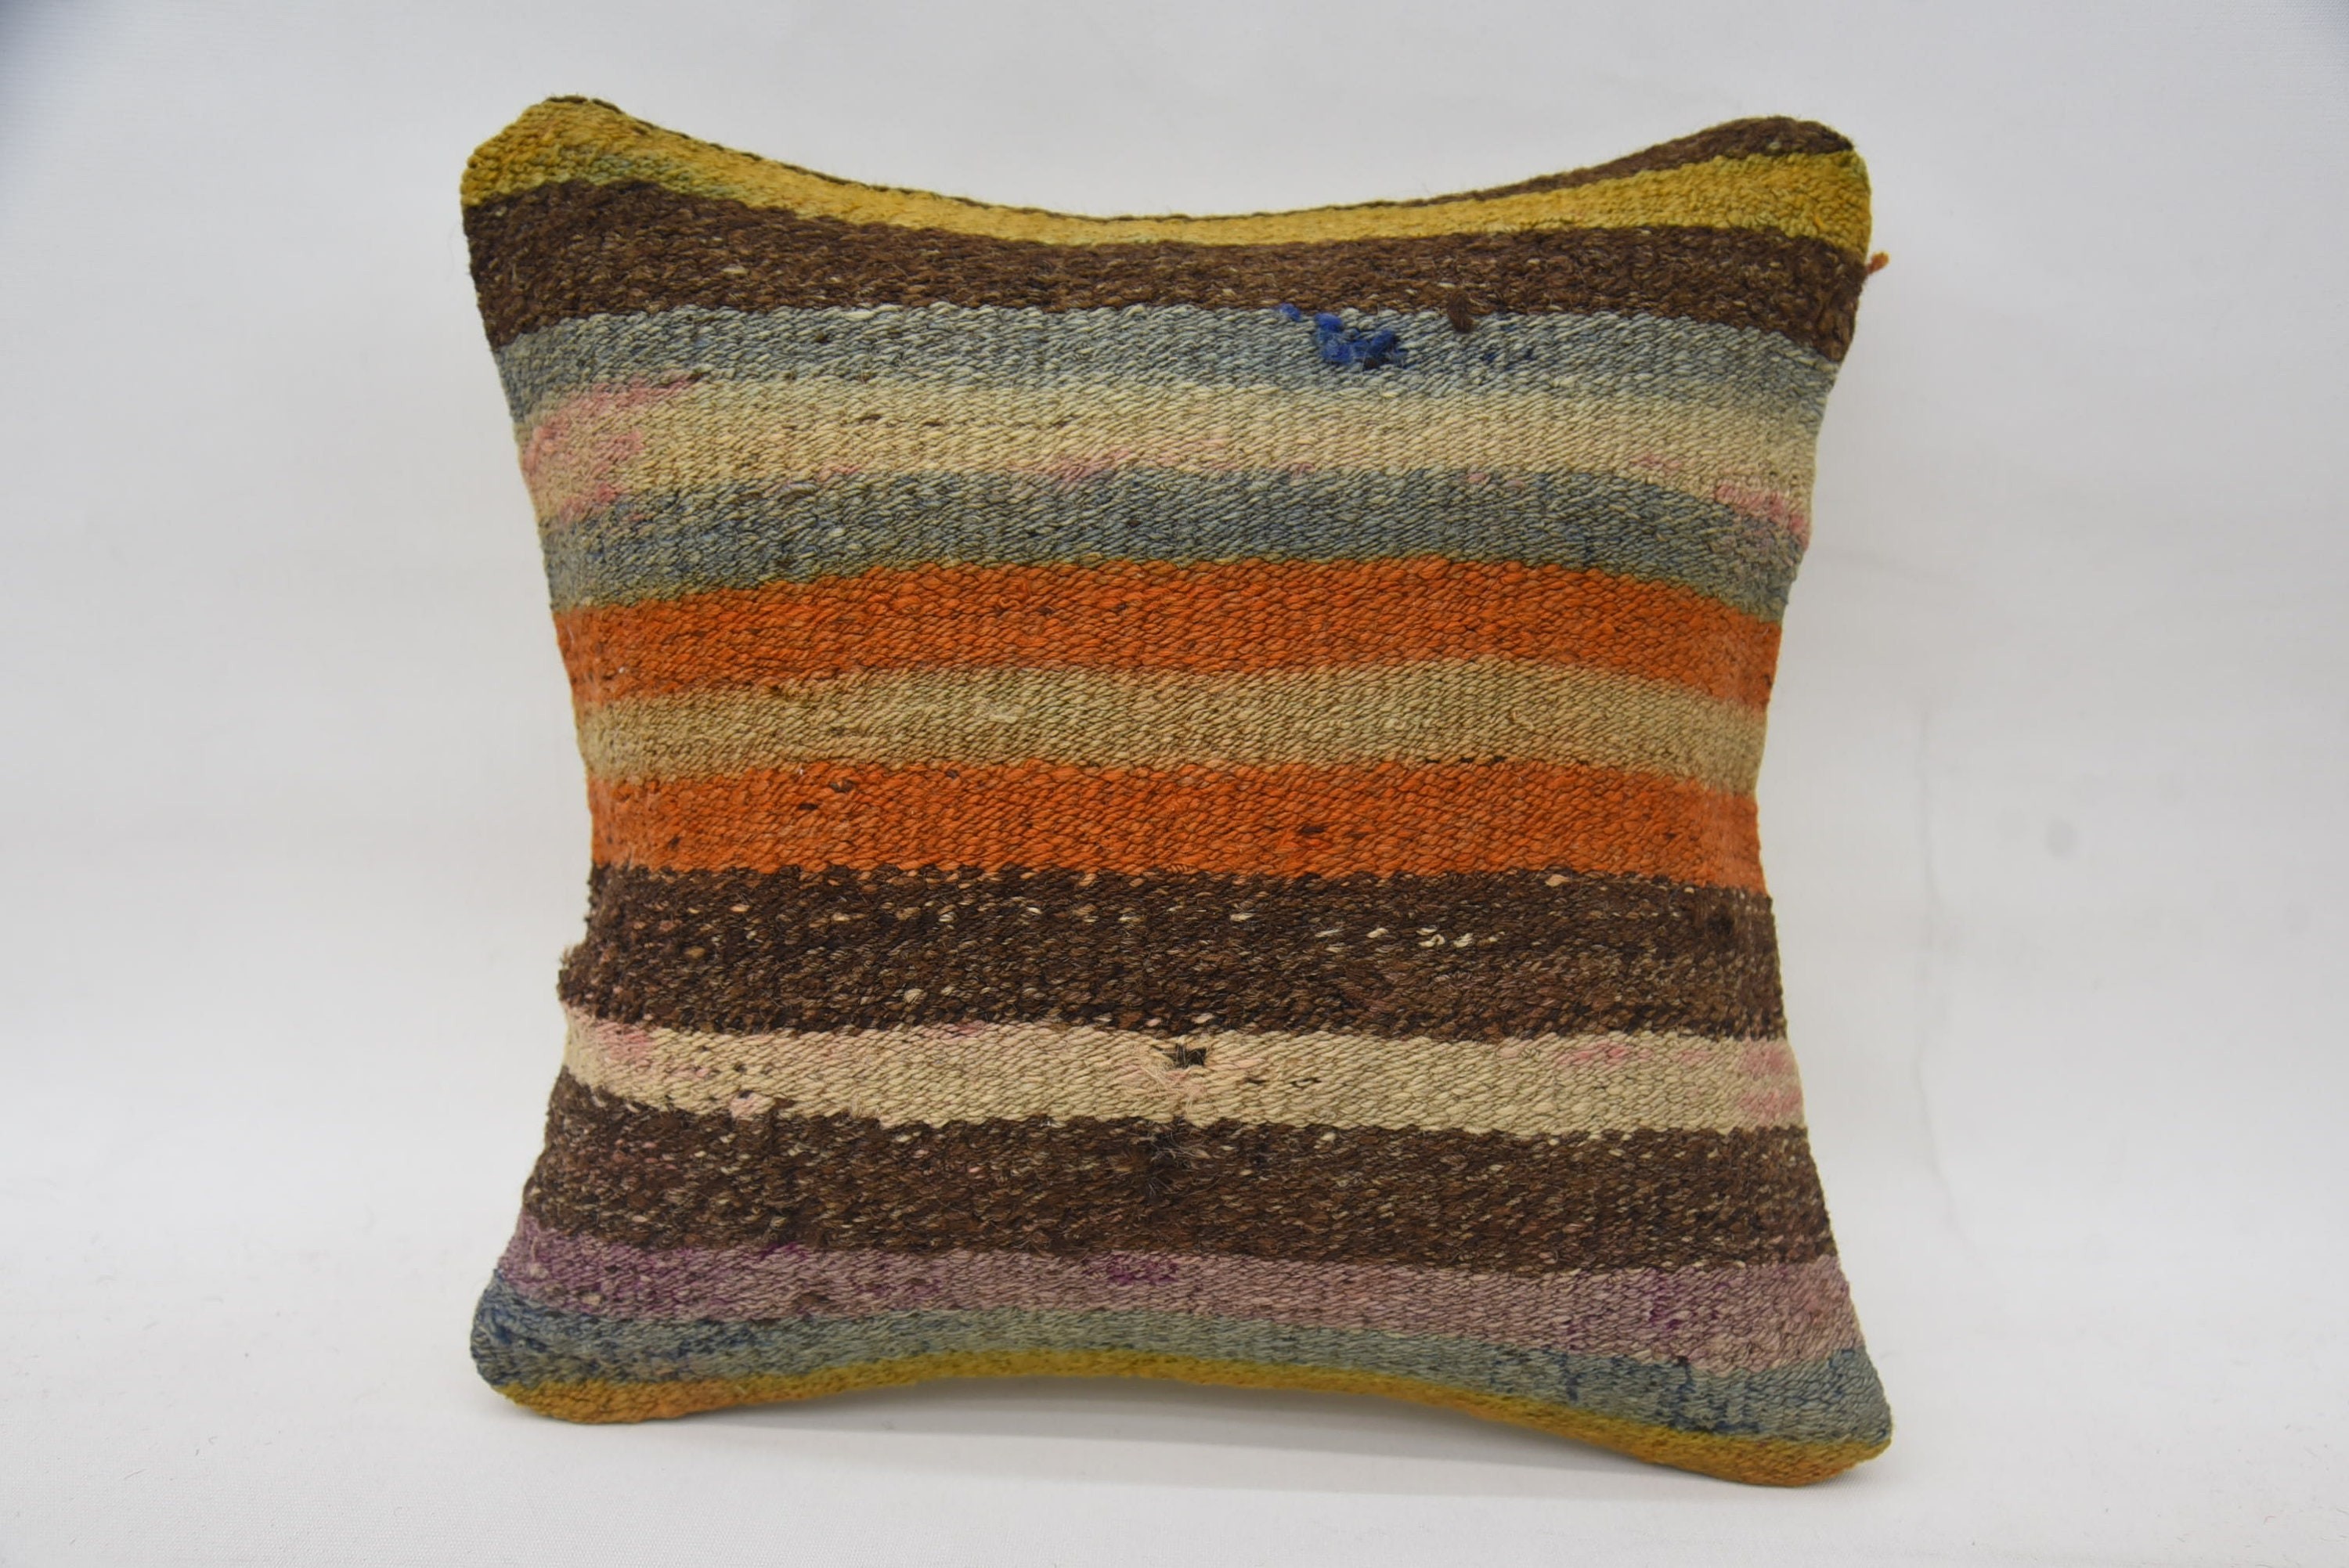 14"x14" Brown Pillow, Ethnical Kilim Rug Pillow, Wholesale Cushion, Vintage Kilim Throw Pillow, Pillow for Sofa